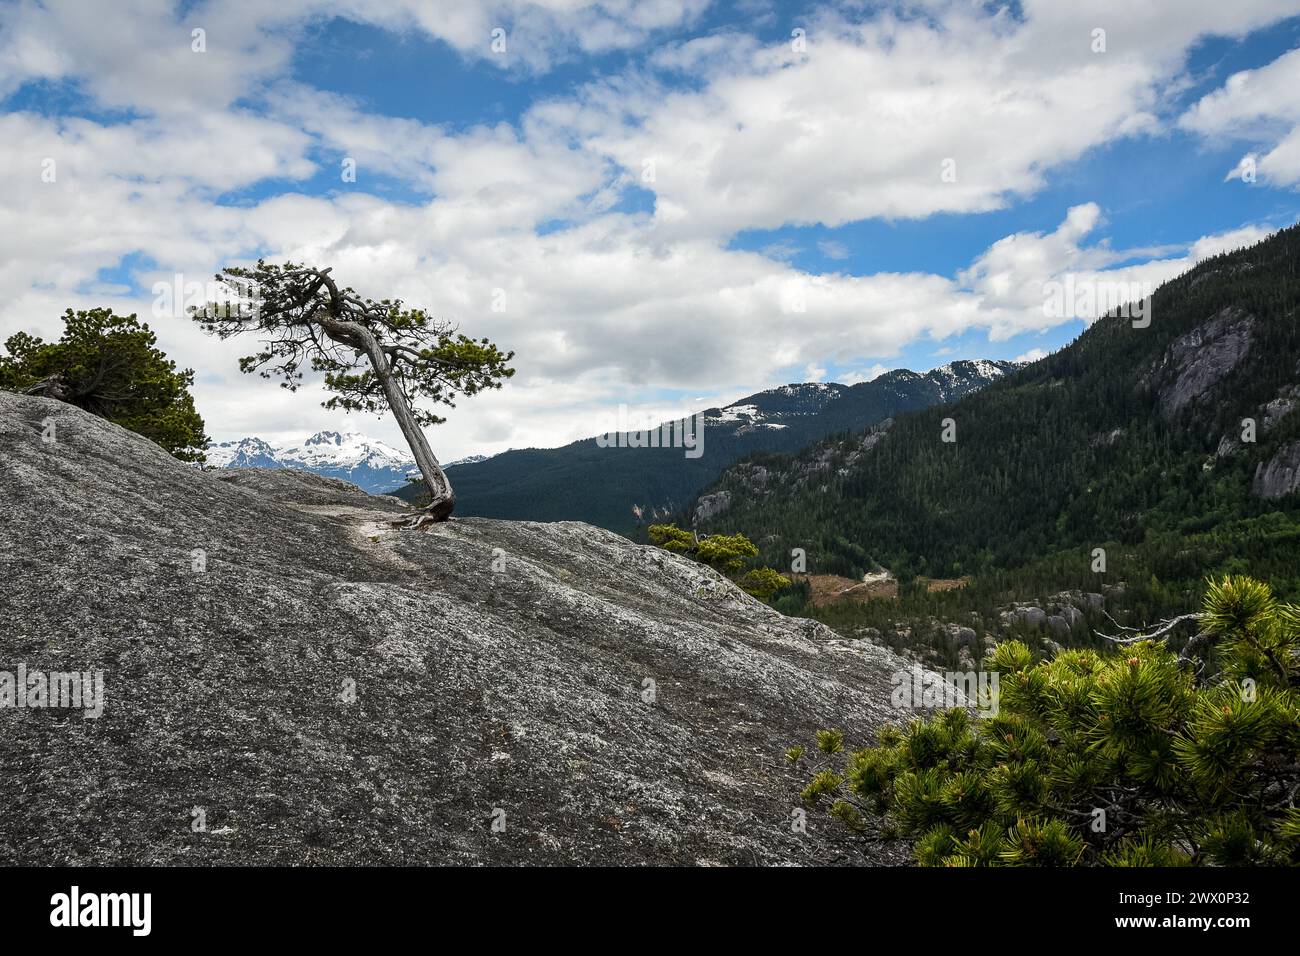 Árbol solitario que crece en un acantilado rocoso en las montañas rocosas canadienses Foto de stock